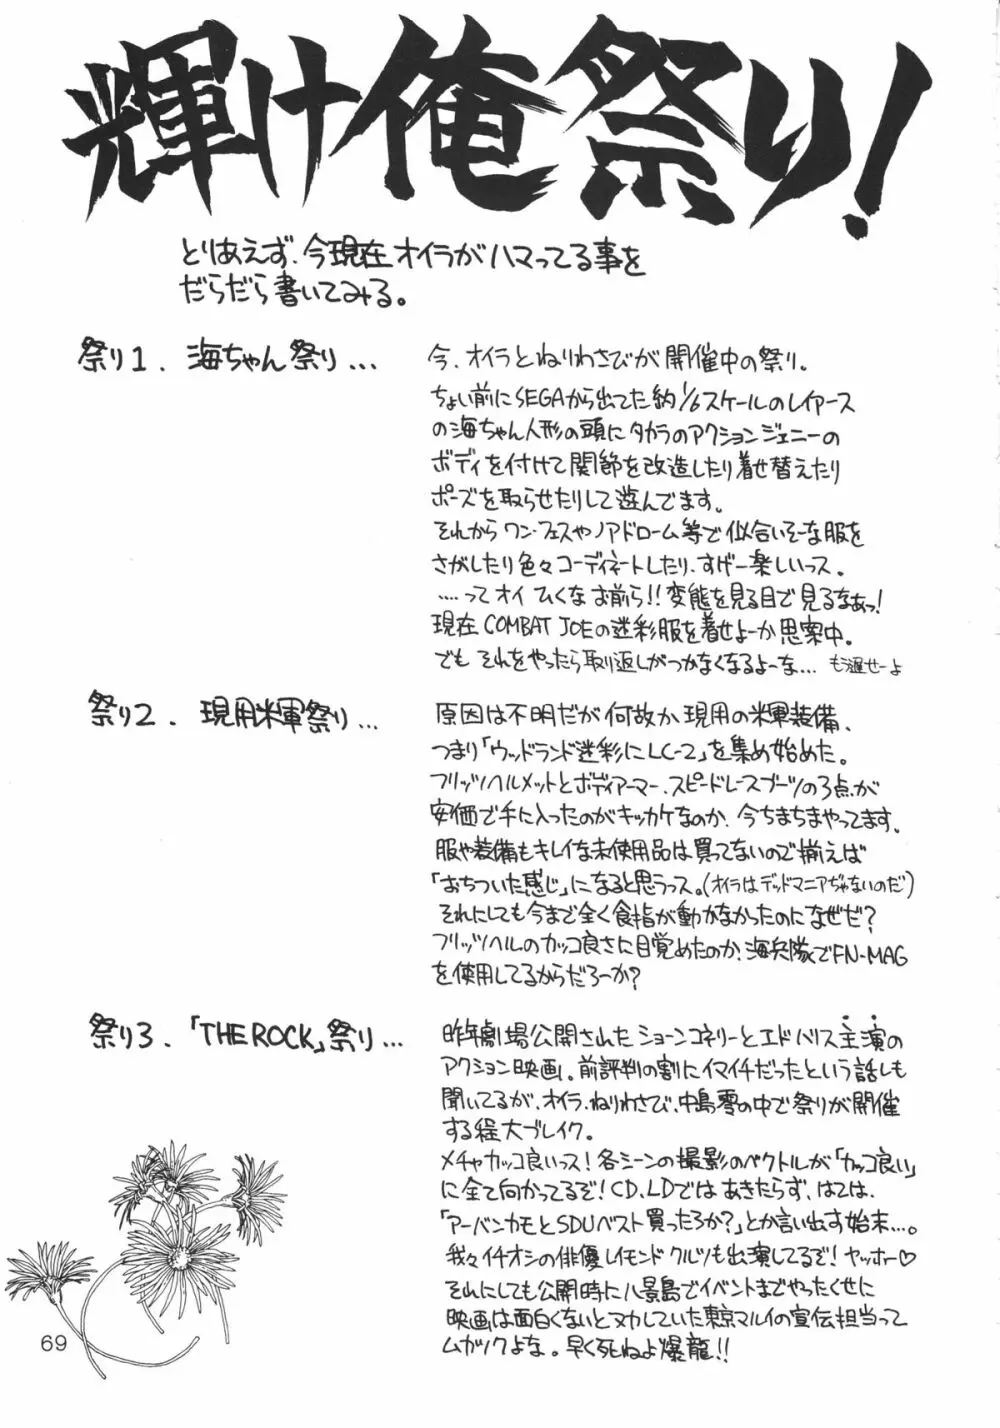 噂のねこ集会 - page68